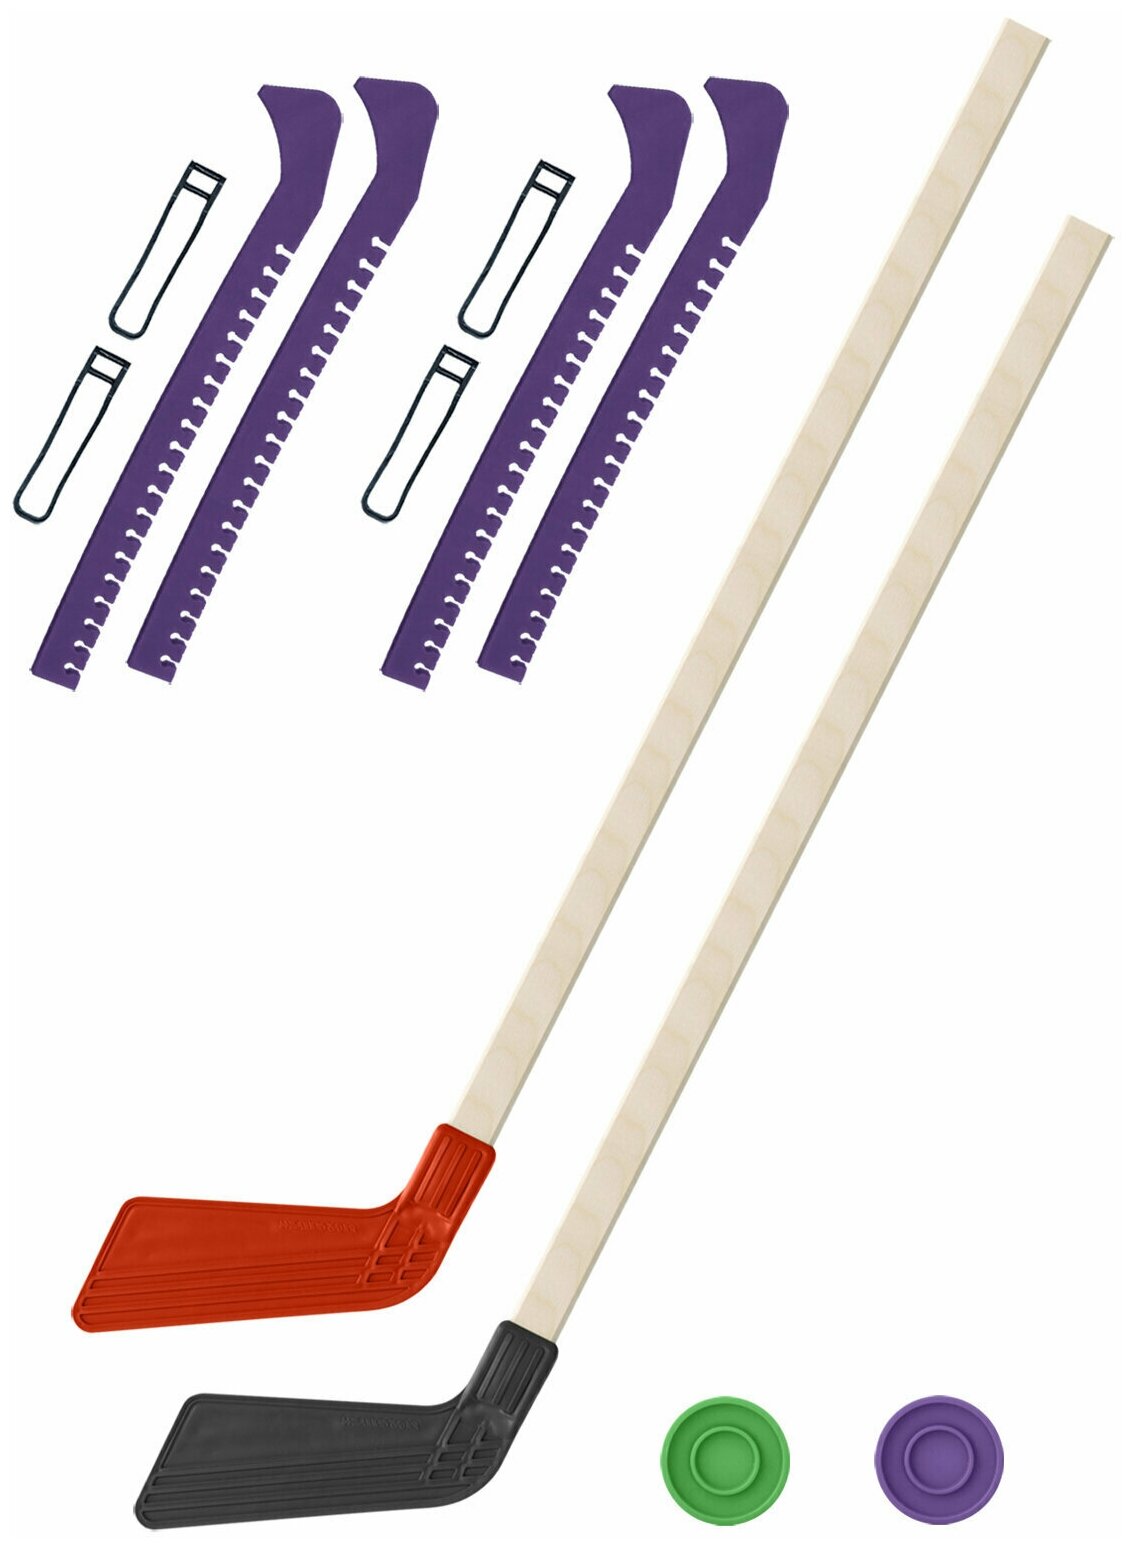 Детский хоккейный набор для игр на улице Клюшка хоккейная детская 2 шт красная и чёрная 80 см.+2 шайбы + Чехлы для коньков фиолетовые - 2 шт.